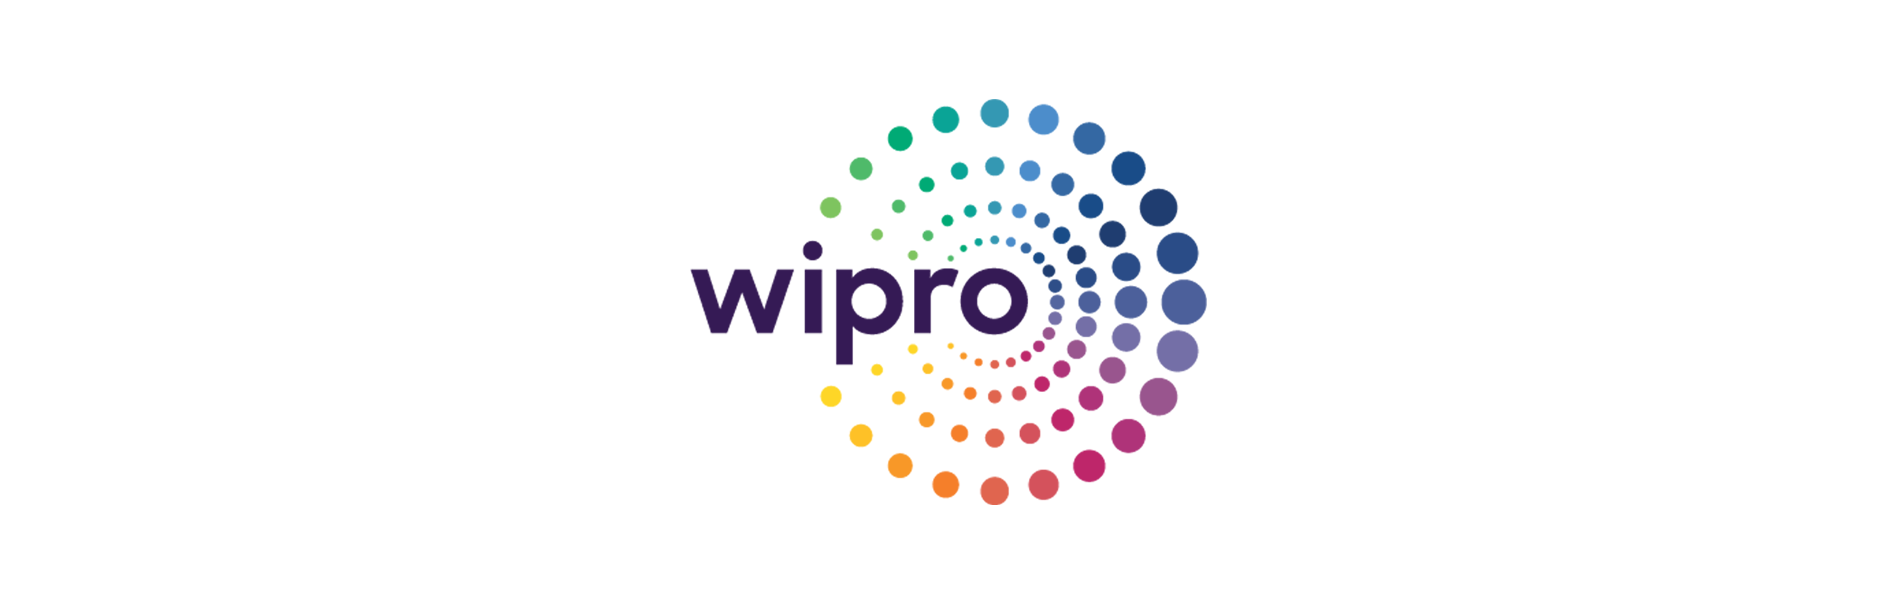 Wipro VisionEDGE